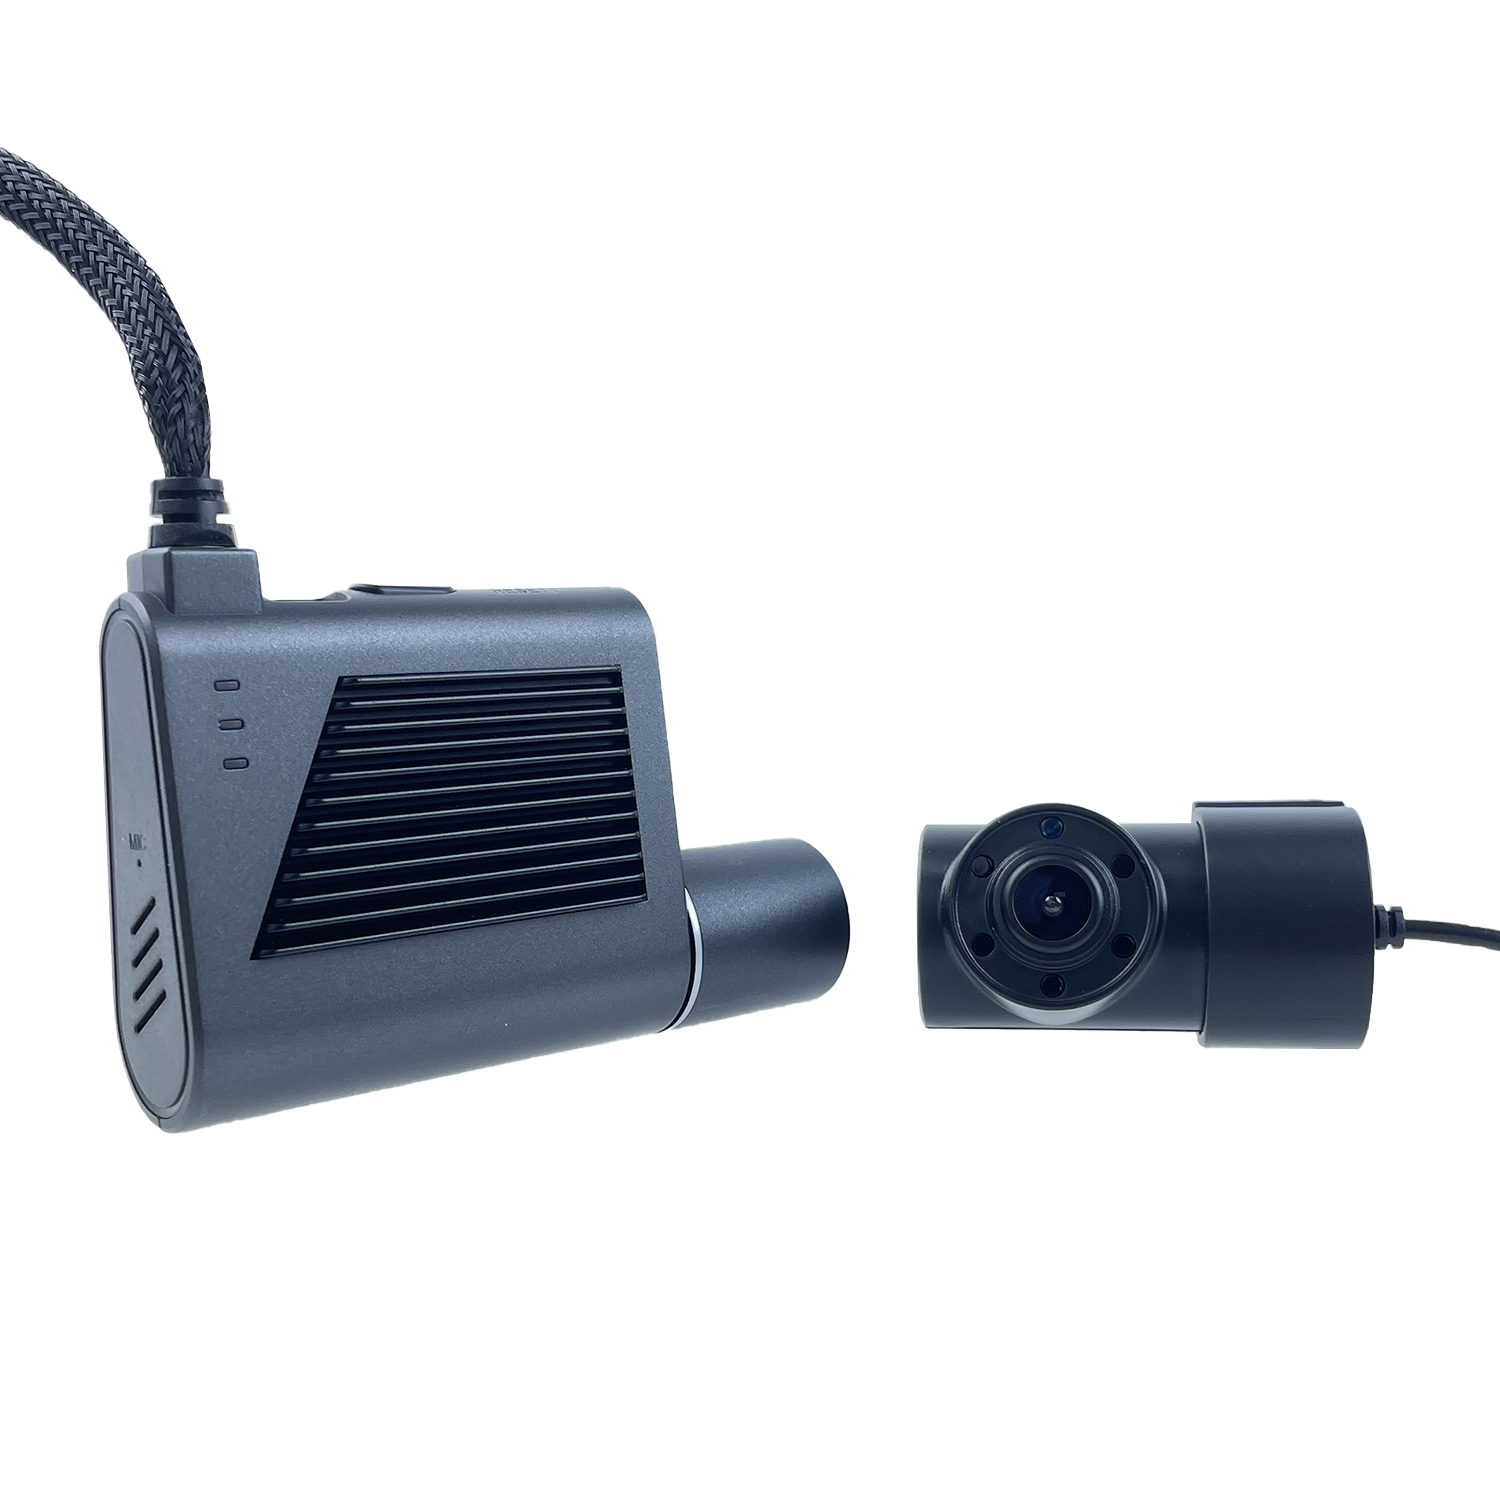 MCY Dual Lens 4G Mini Dash Cam novērošanas kamera ar SIM karti, kas piemērota CMSV6 platformai DMS pēc izvēles